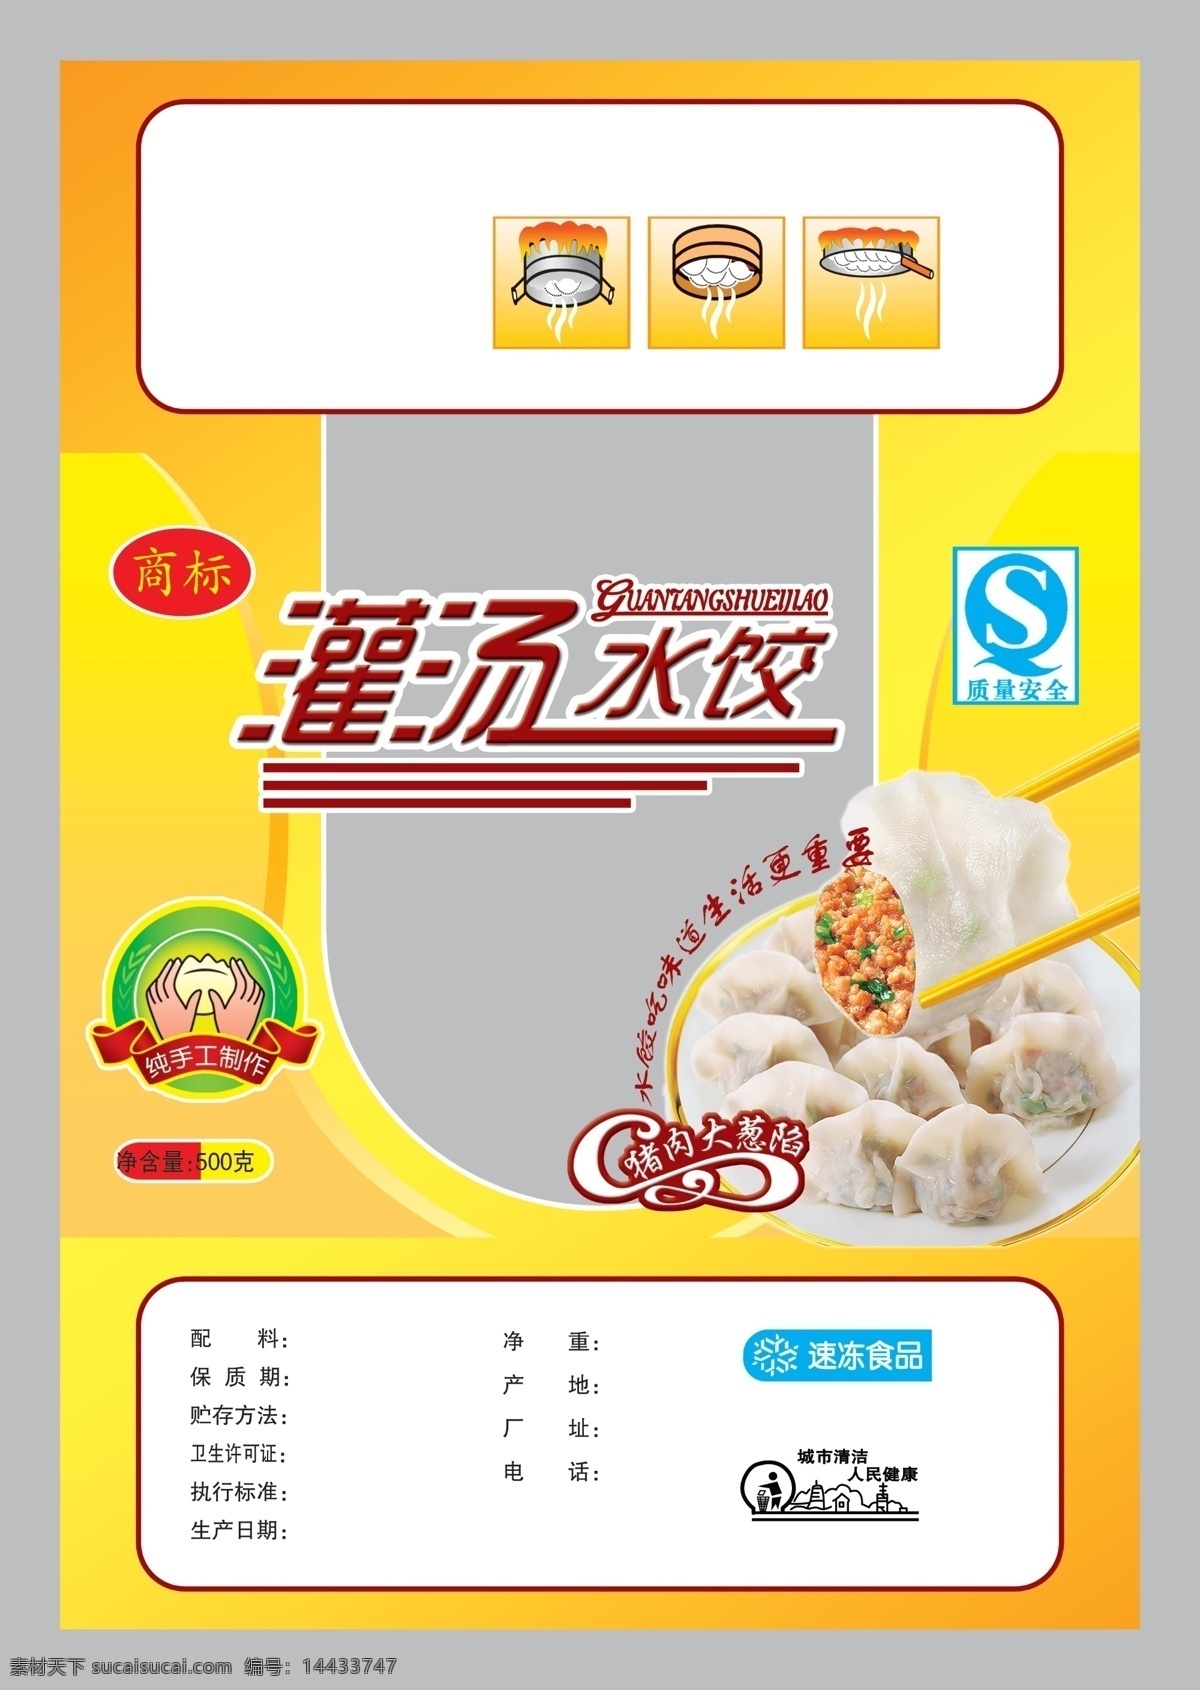 灌 汤 水饺 包装袋 纯手工标 qs标 卫生标 水饺火锅 包装设计 广告设计模板 源文件